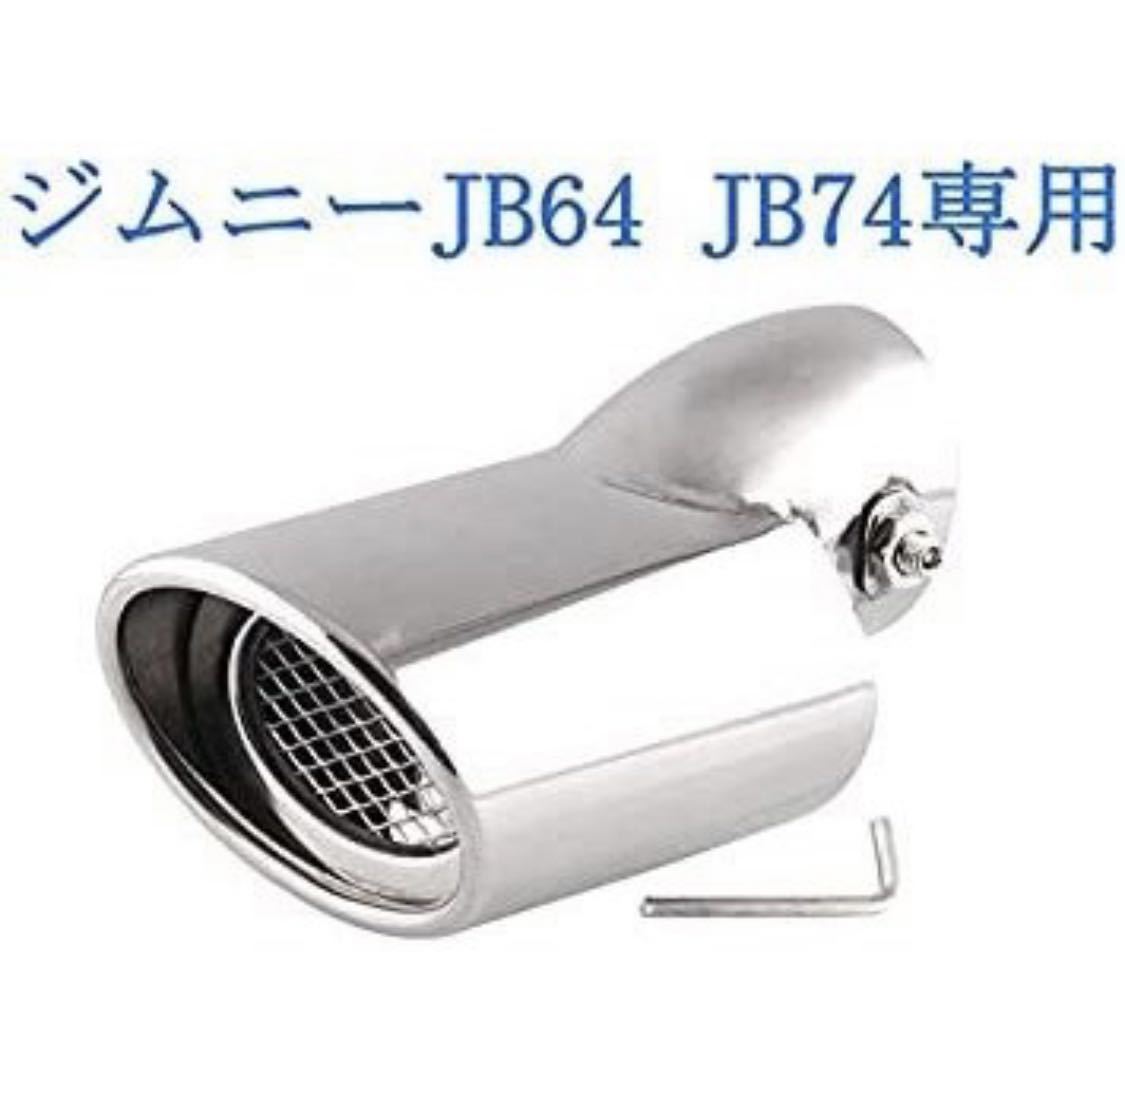 スズキ ジムニー JB64 JB74専用 マフラーカッターシルバー 下向き式 スラッシュカット シングル 簡単取付 後付け 重厚感有り_画像7